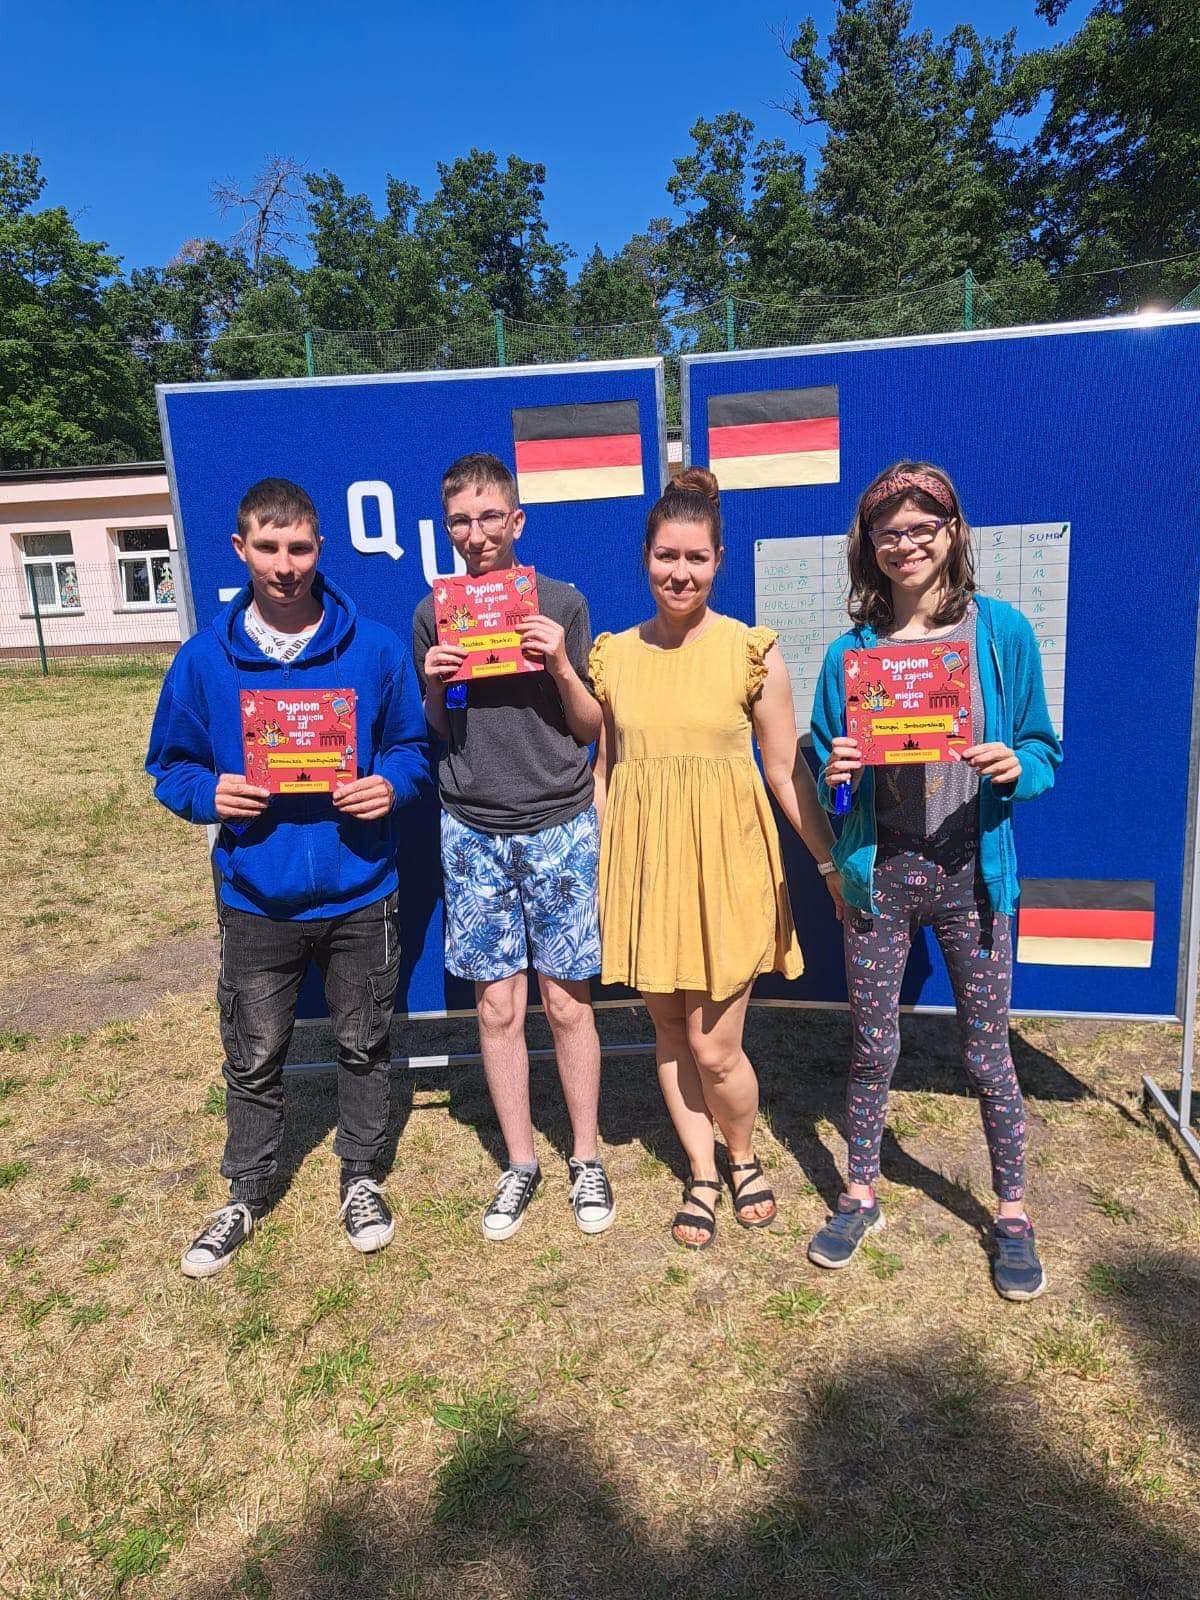 Zwycięzcy quizu- Dominik, Radek i Marysia wraz z jego organizatorką Panią Kasią.